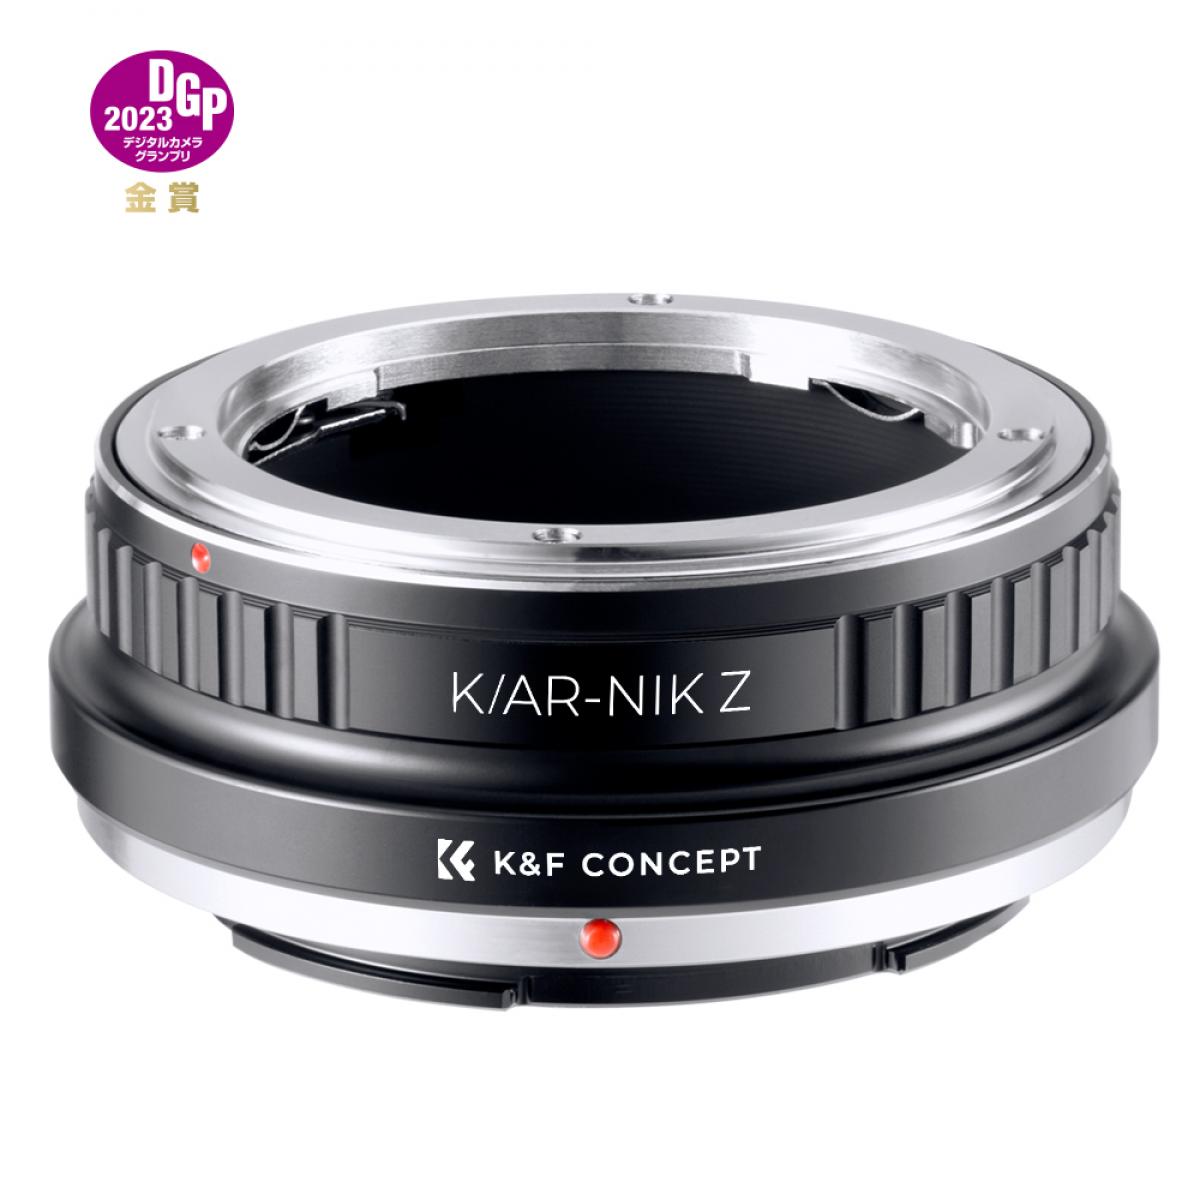 Lente de la serie Konica a cámara con montura Nikon Z Adaptador de lentes  de alta precisión, K/AR-NIK Z - K&F Concept